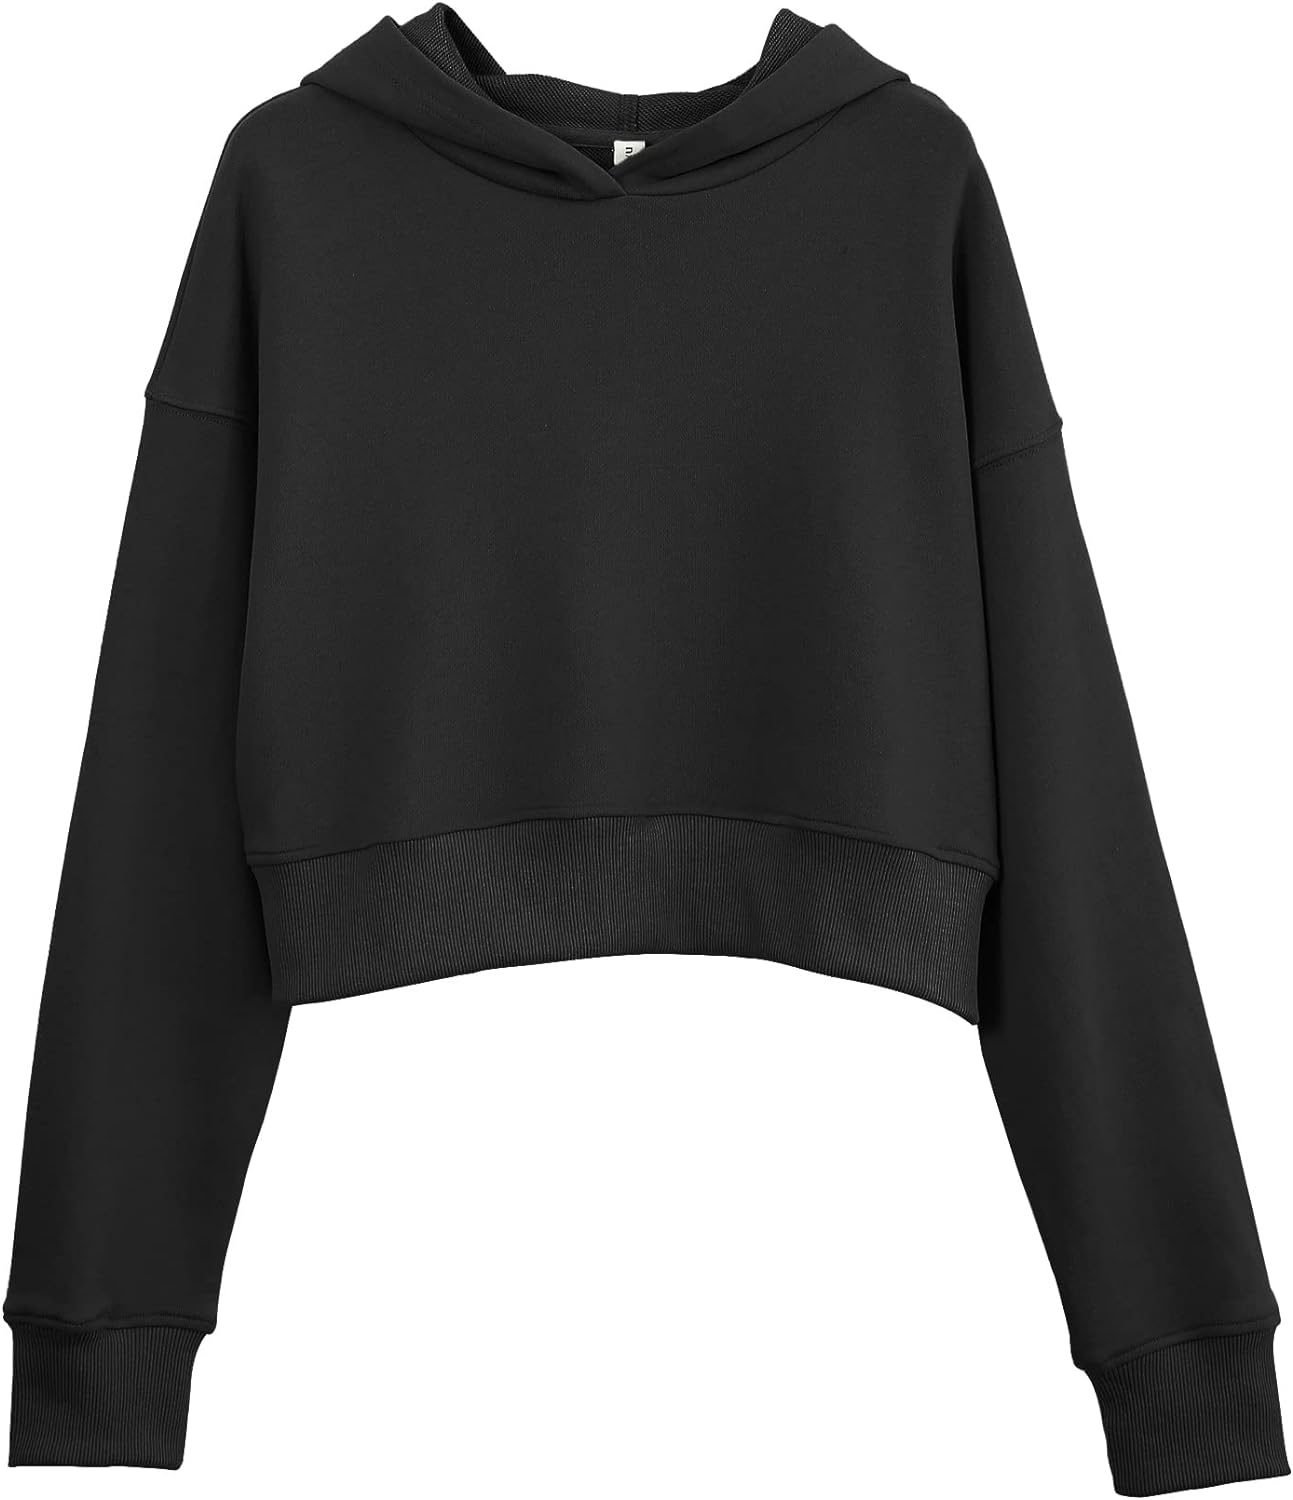 NTG Fad Black / Medium Amazhiyu Women’s Cropped Hoodie with Hood Casual Long Sleeve Crop Top Sweatshirt